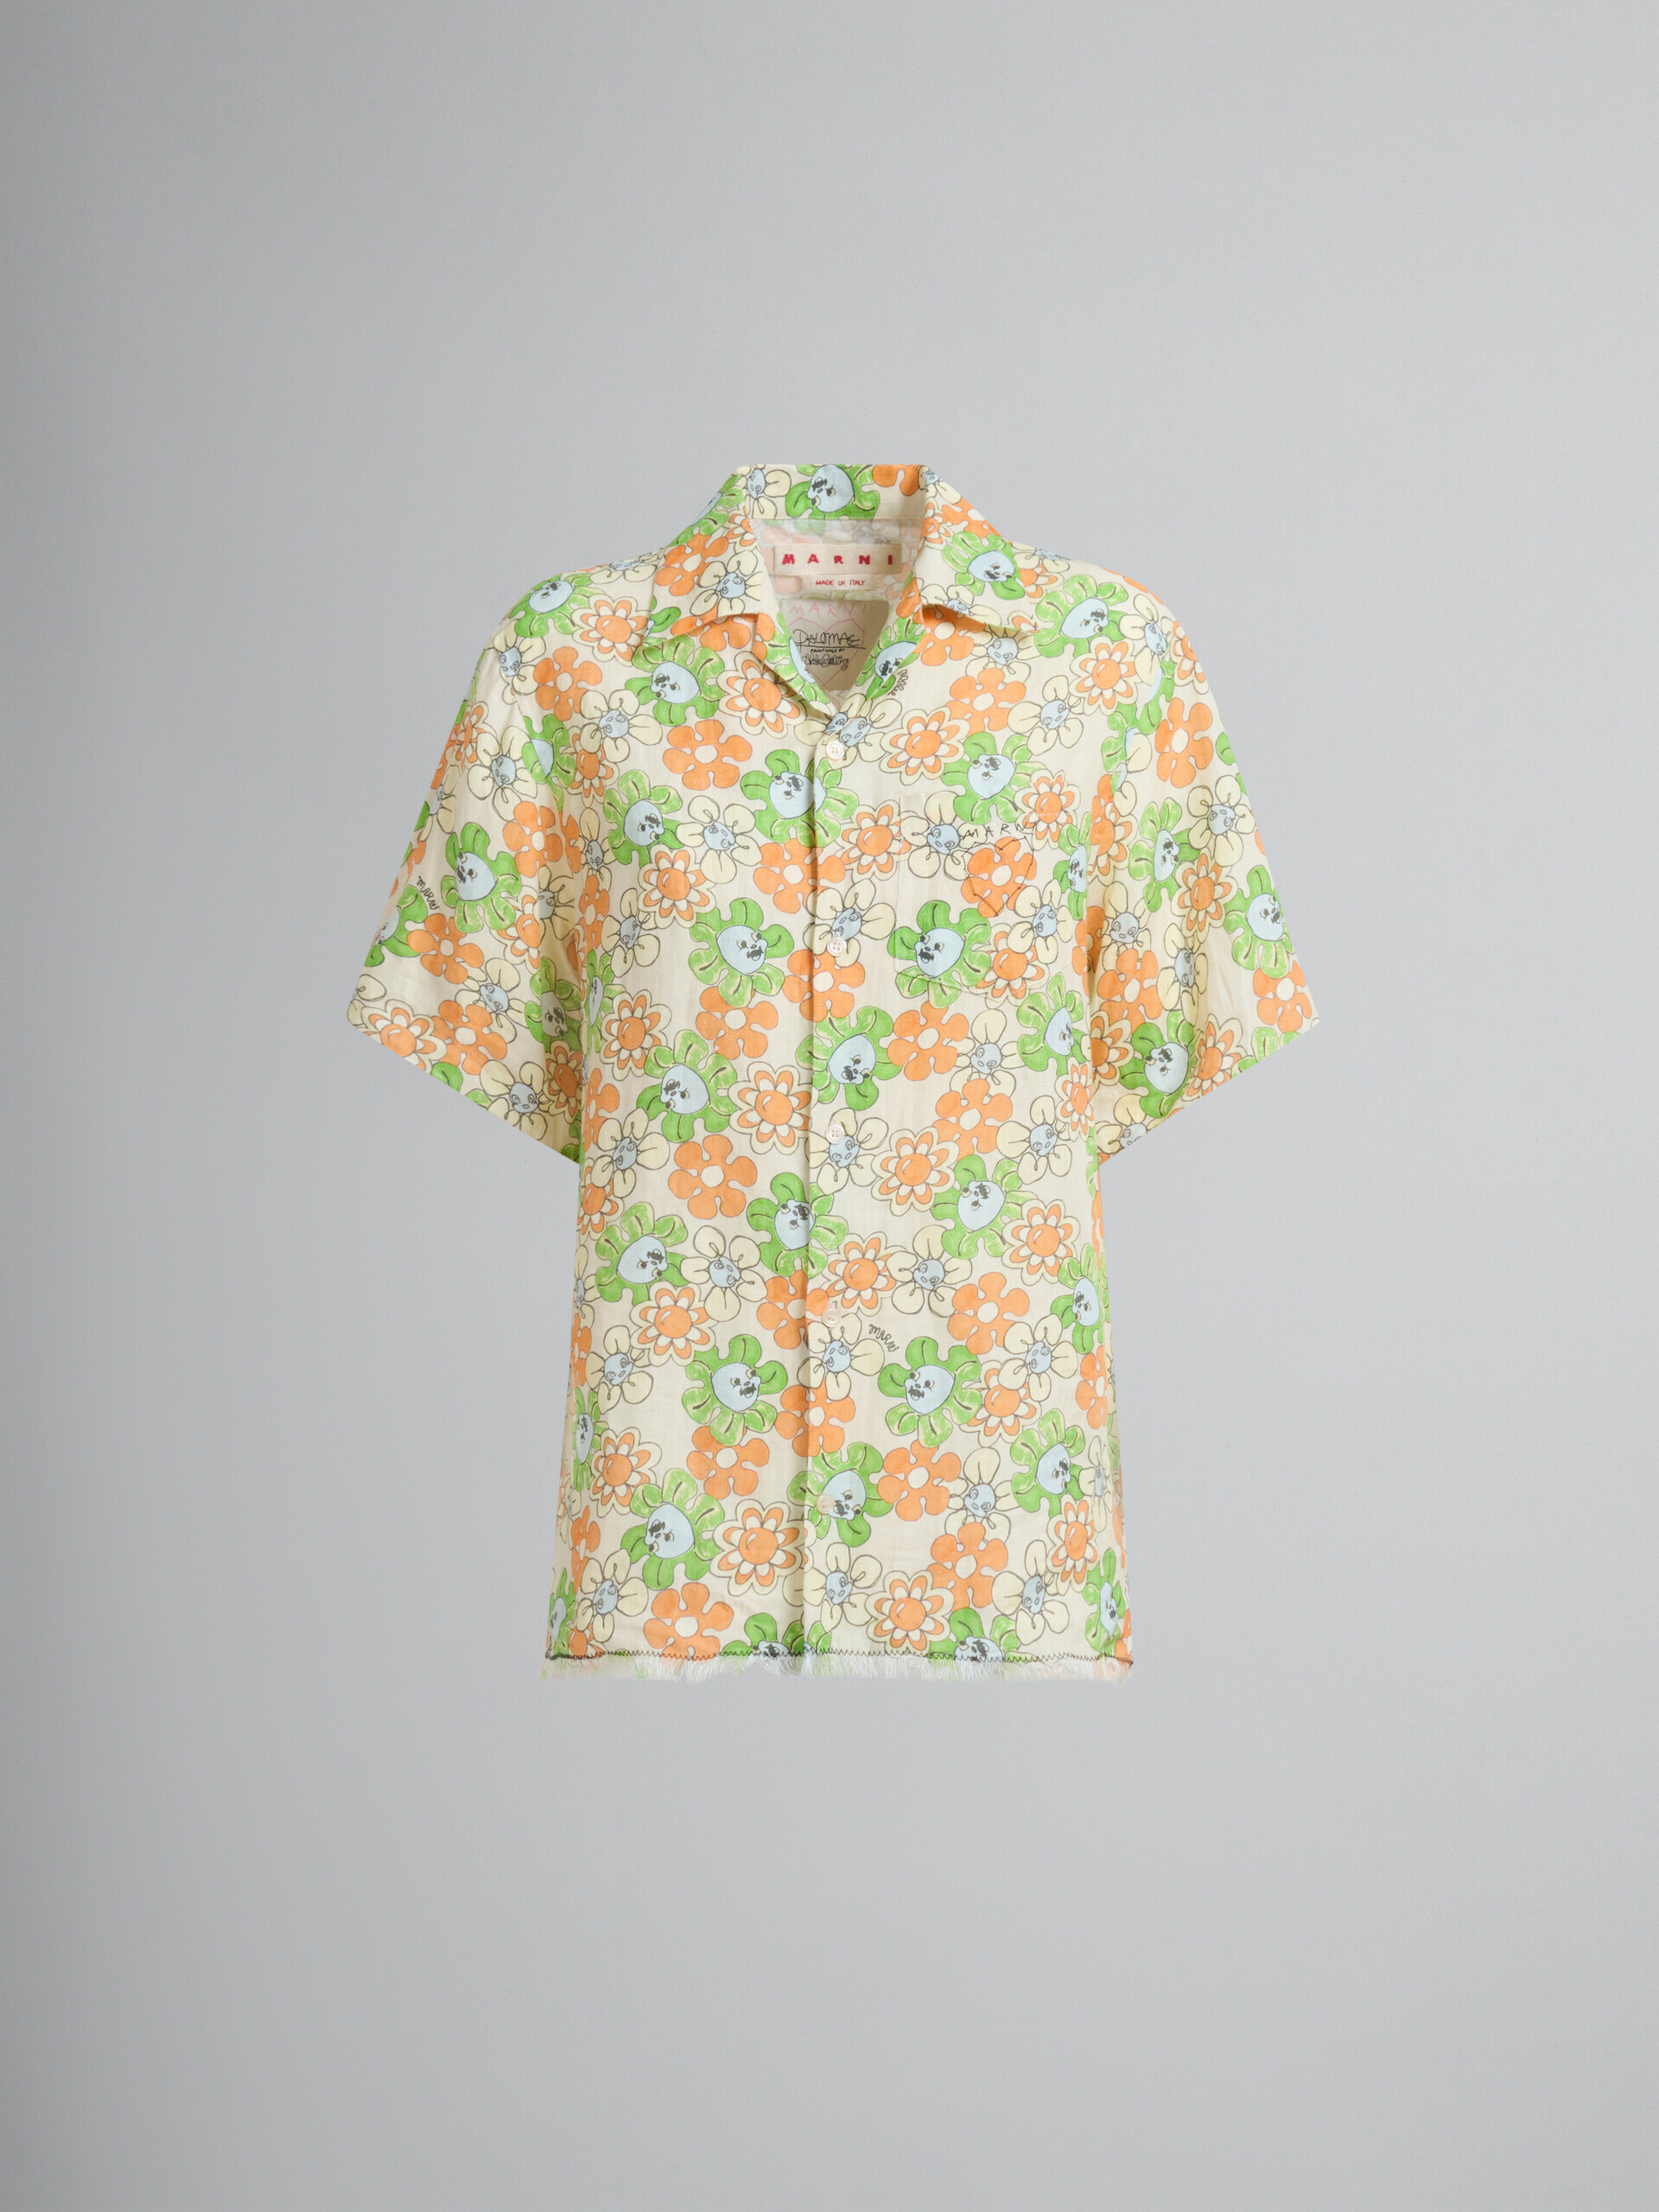 オレンジとグリーンのプリント入りリネンシャツ - シャツ - Image 2